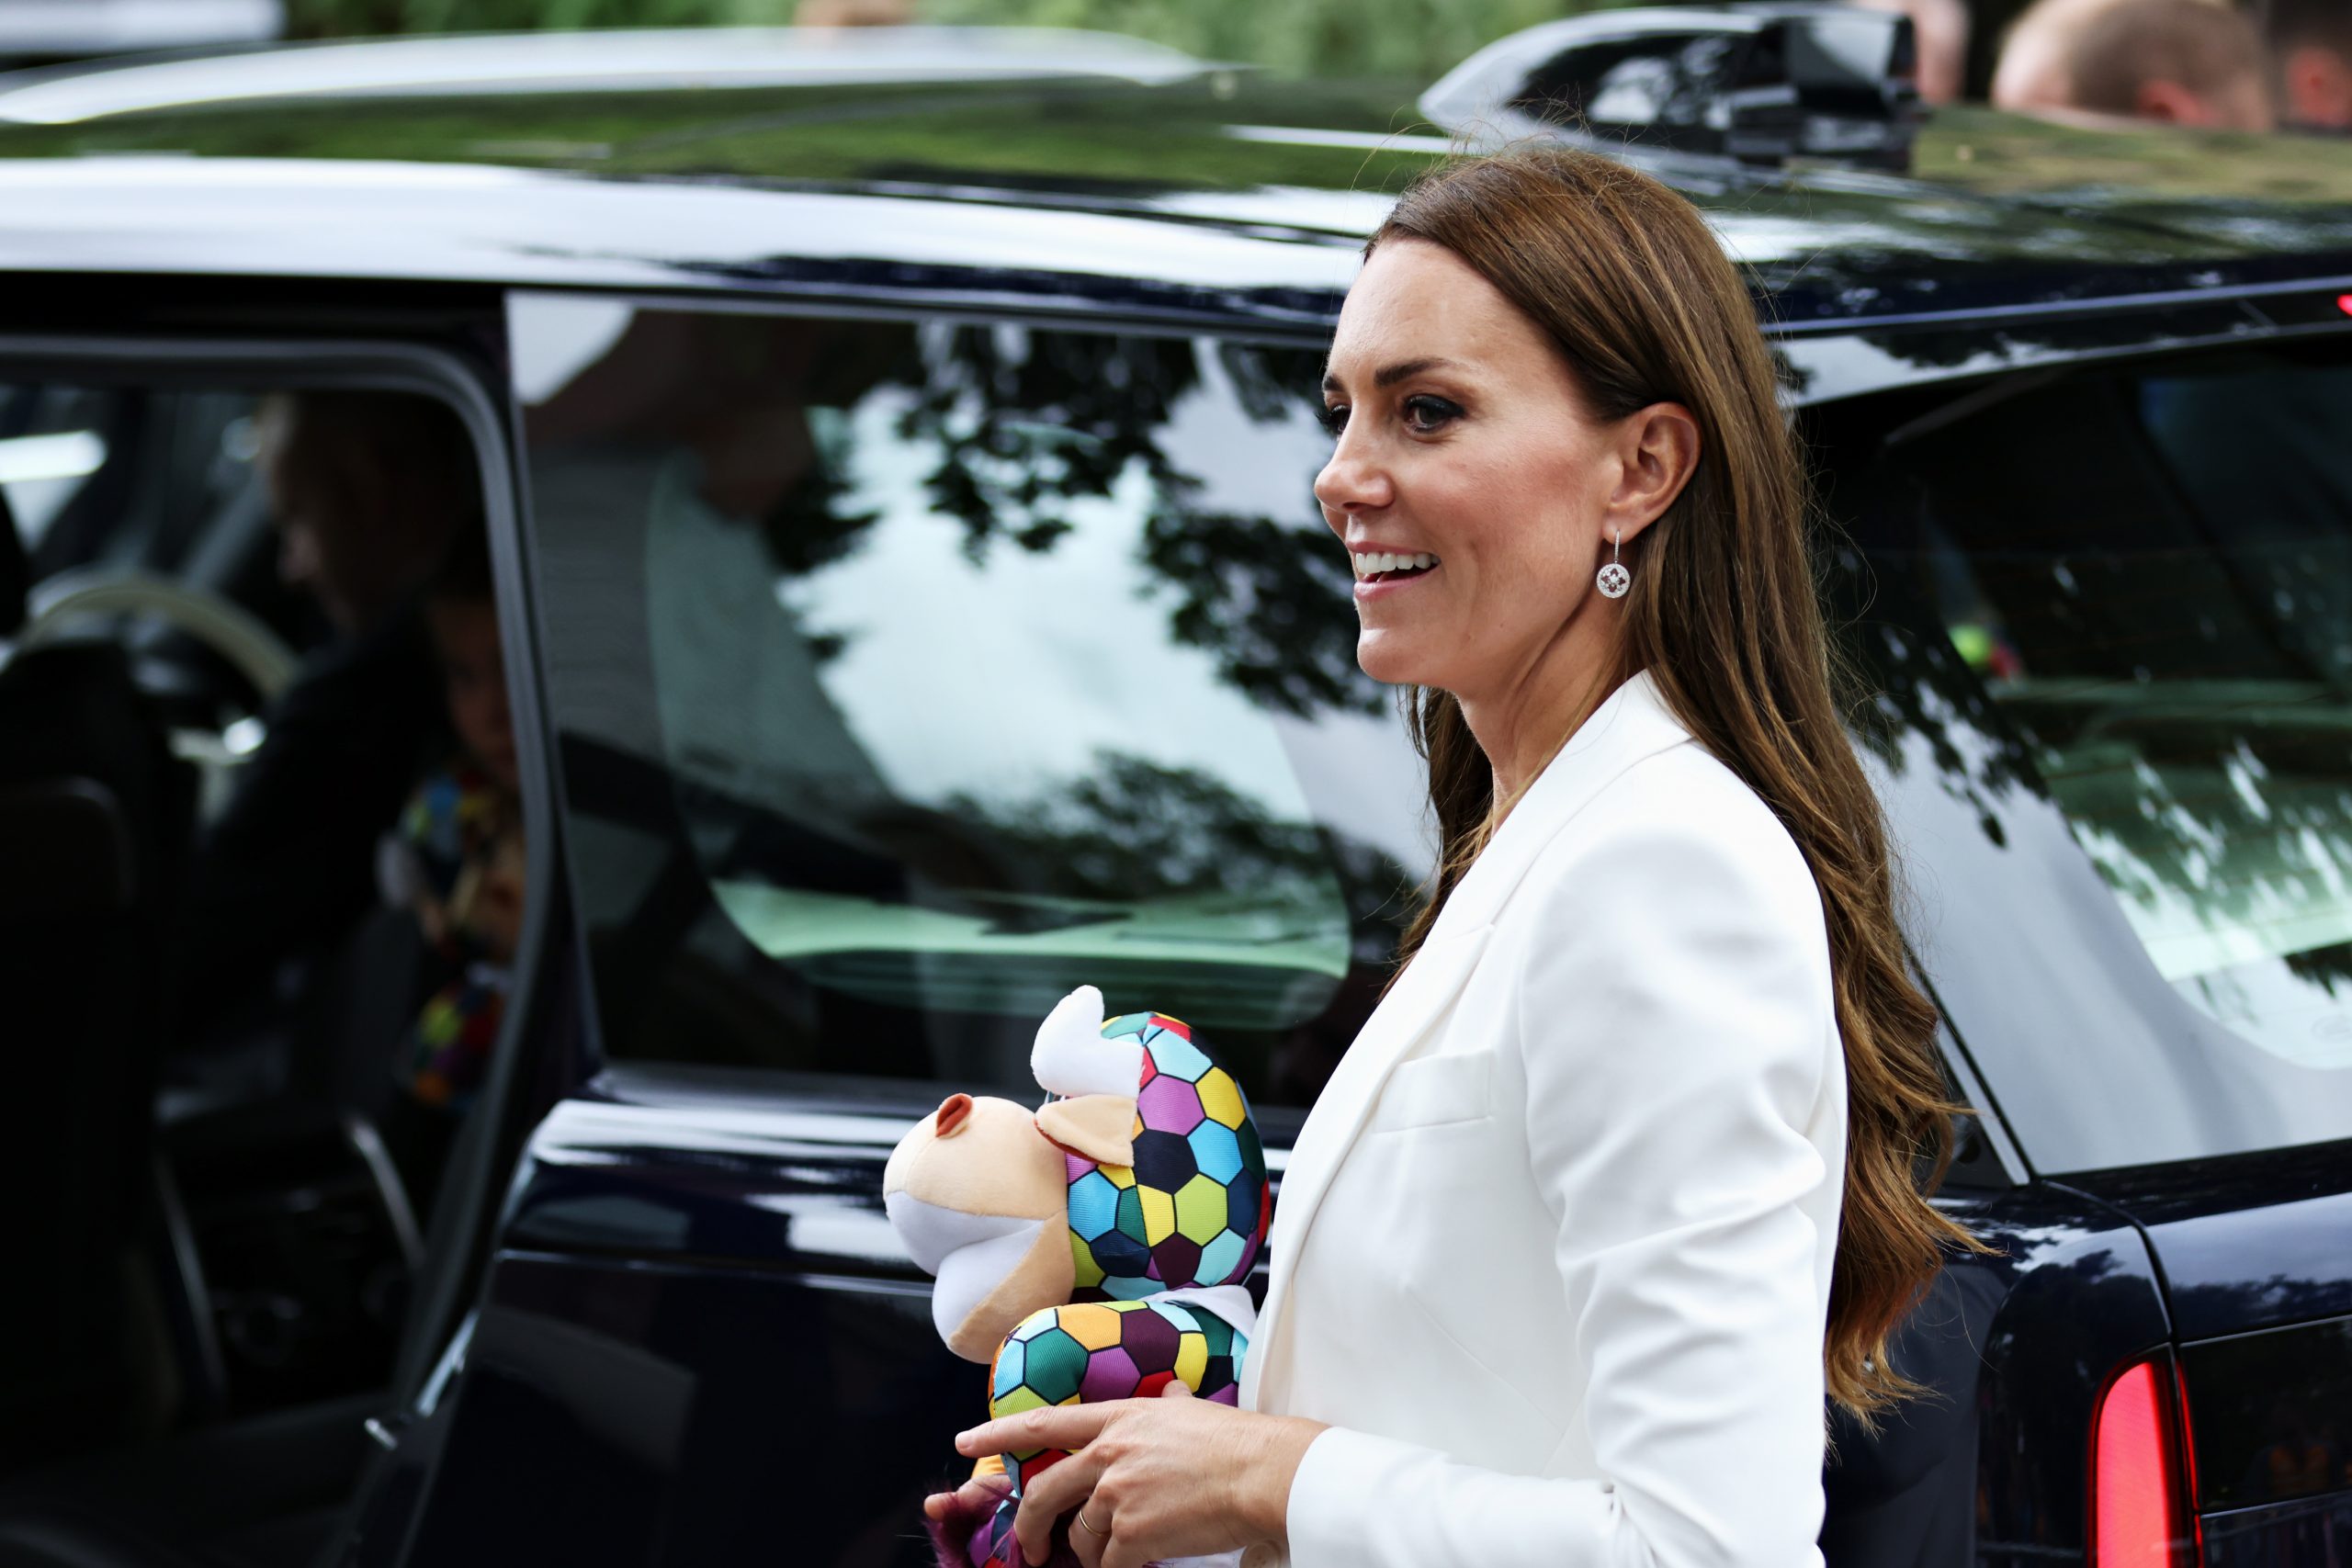 Το un-royal look της Kate Middleton είναι ό,τι πρέπει για το ταξίδι σου στο νησί #GetTheLook